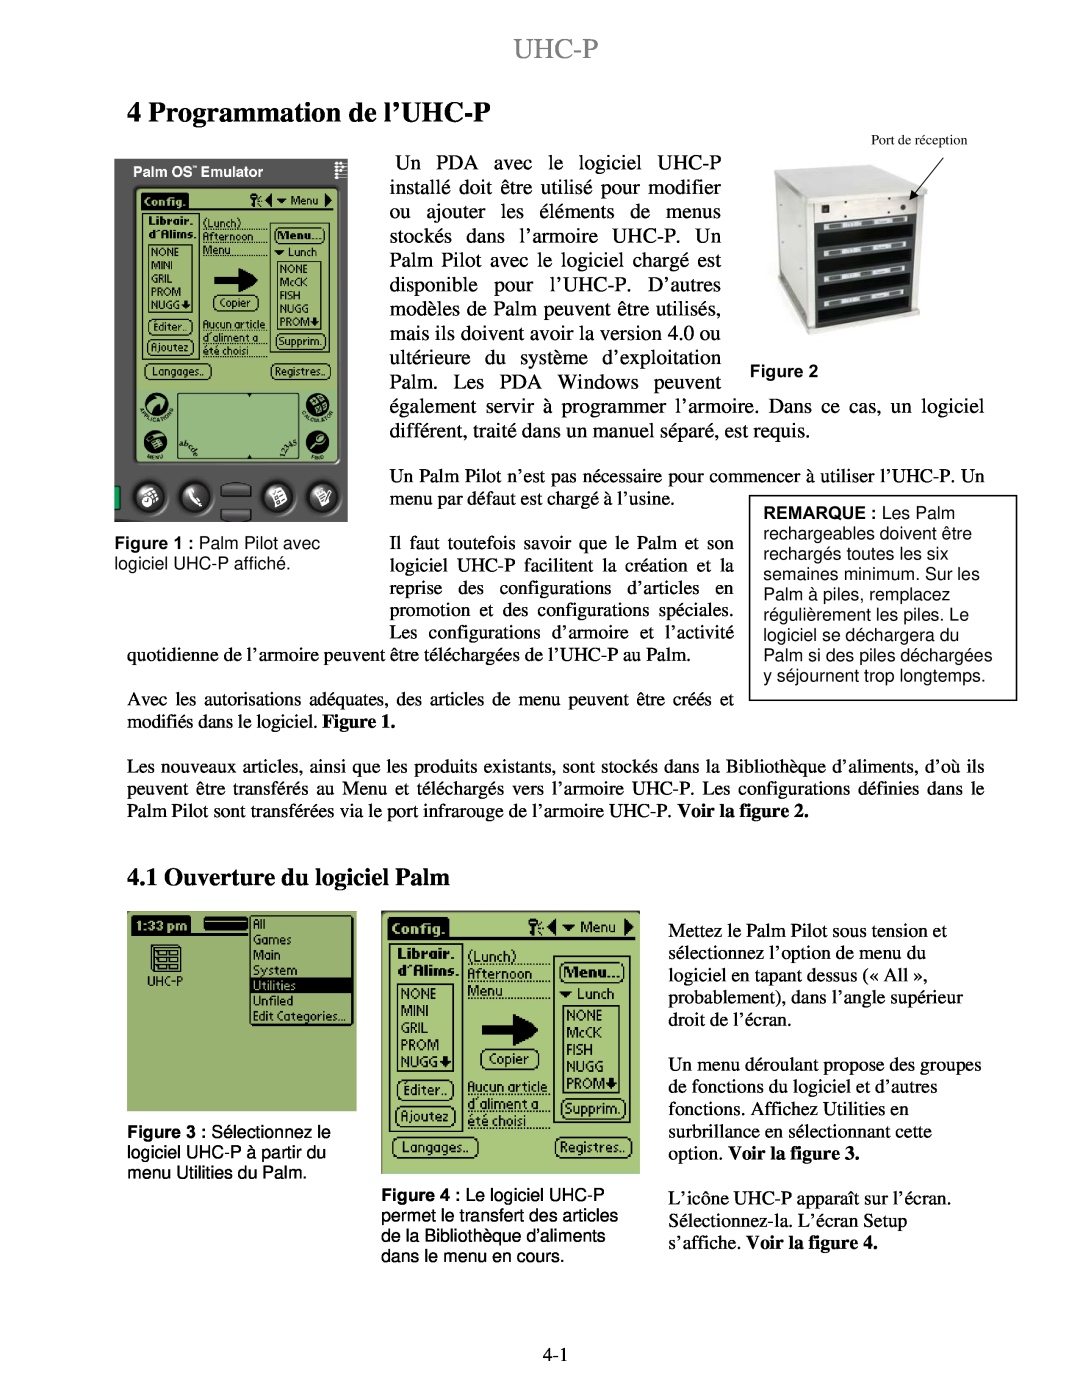 Frymaster UHC-P 2, UHC-PN manuel dutilisation Uhc-P, Programmation de l’UHC-P, Ouverture du logiciel Palm 